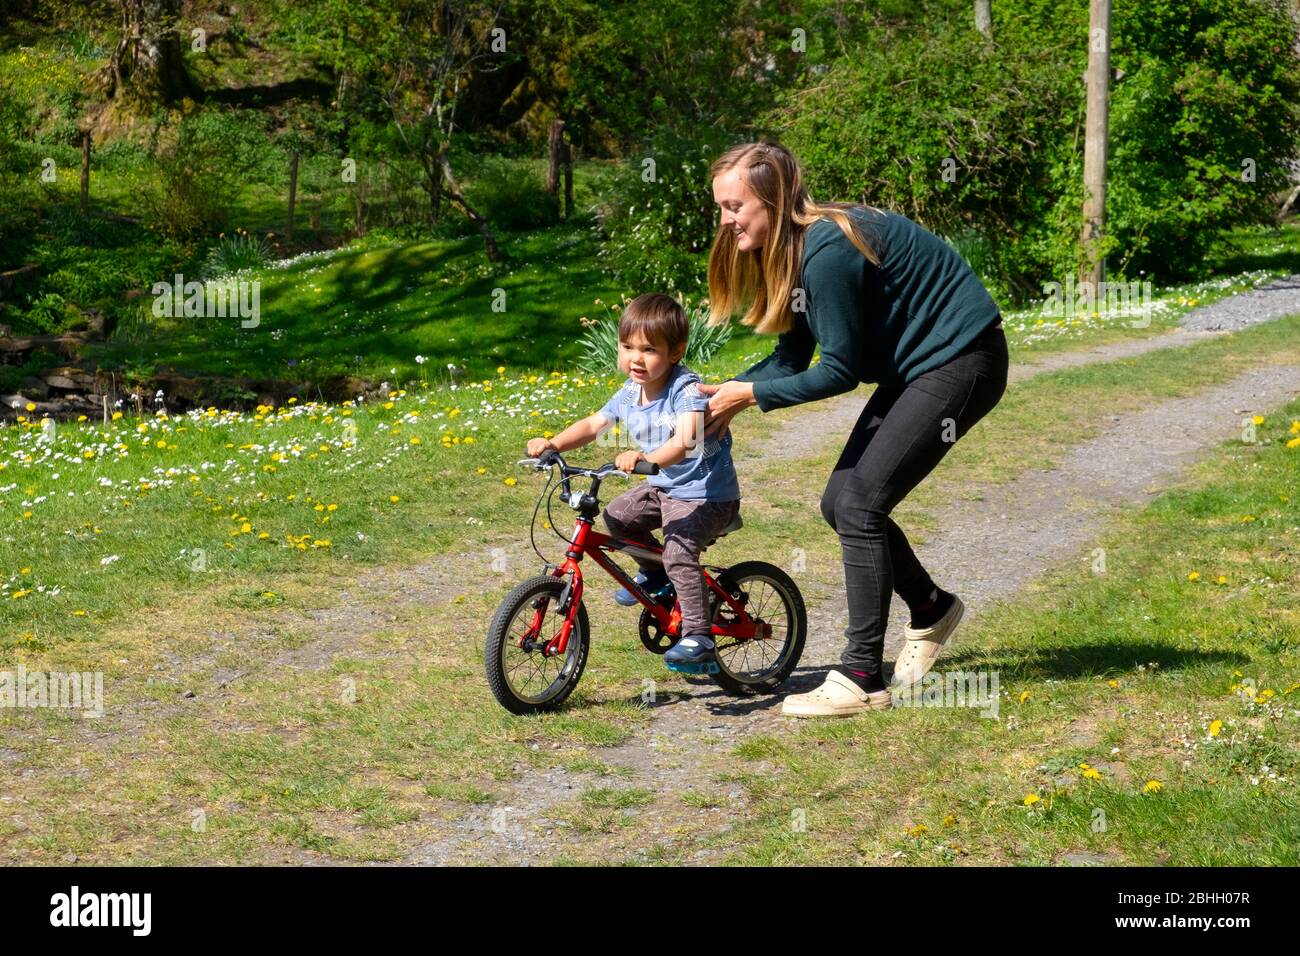 Mère jouant avec son jeune garçon de 3 ans l'aidant à apprendre à faire du vélo pendant le maintien dans Carmarthenshire Pays de Galles Royaume-Uni KATHY DEWITT Banque D'Images